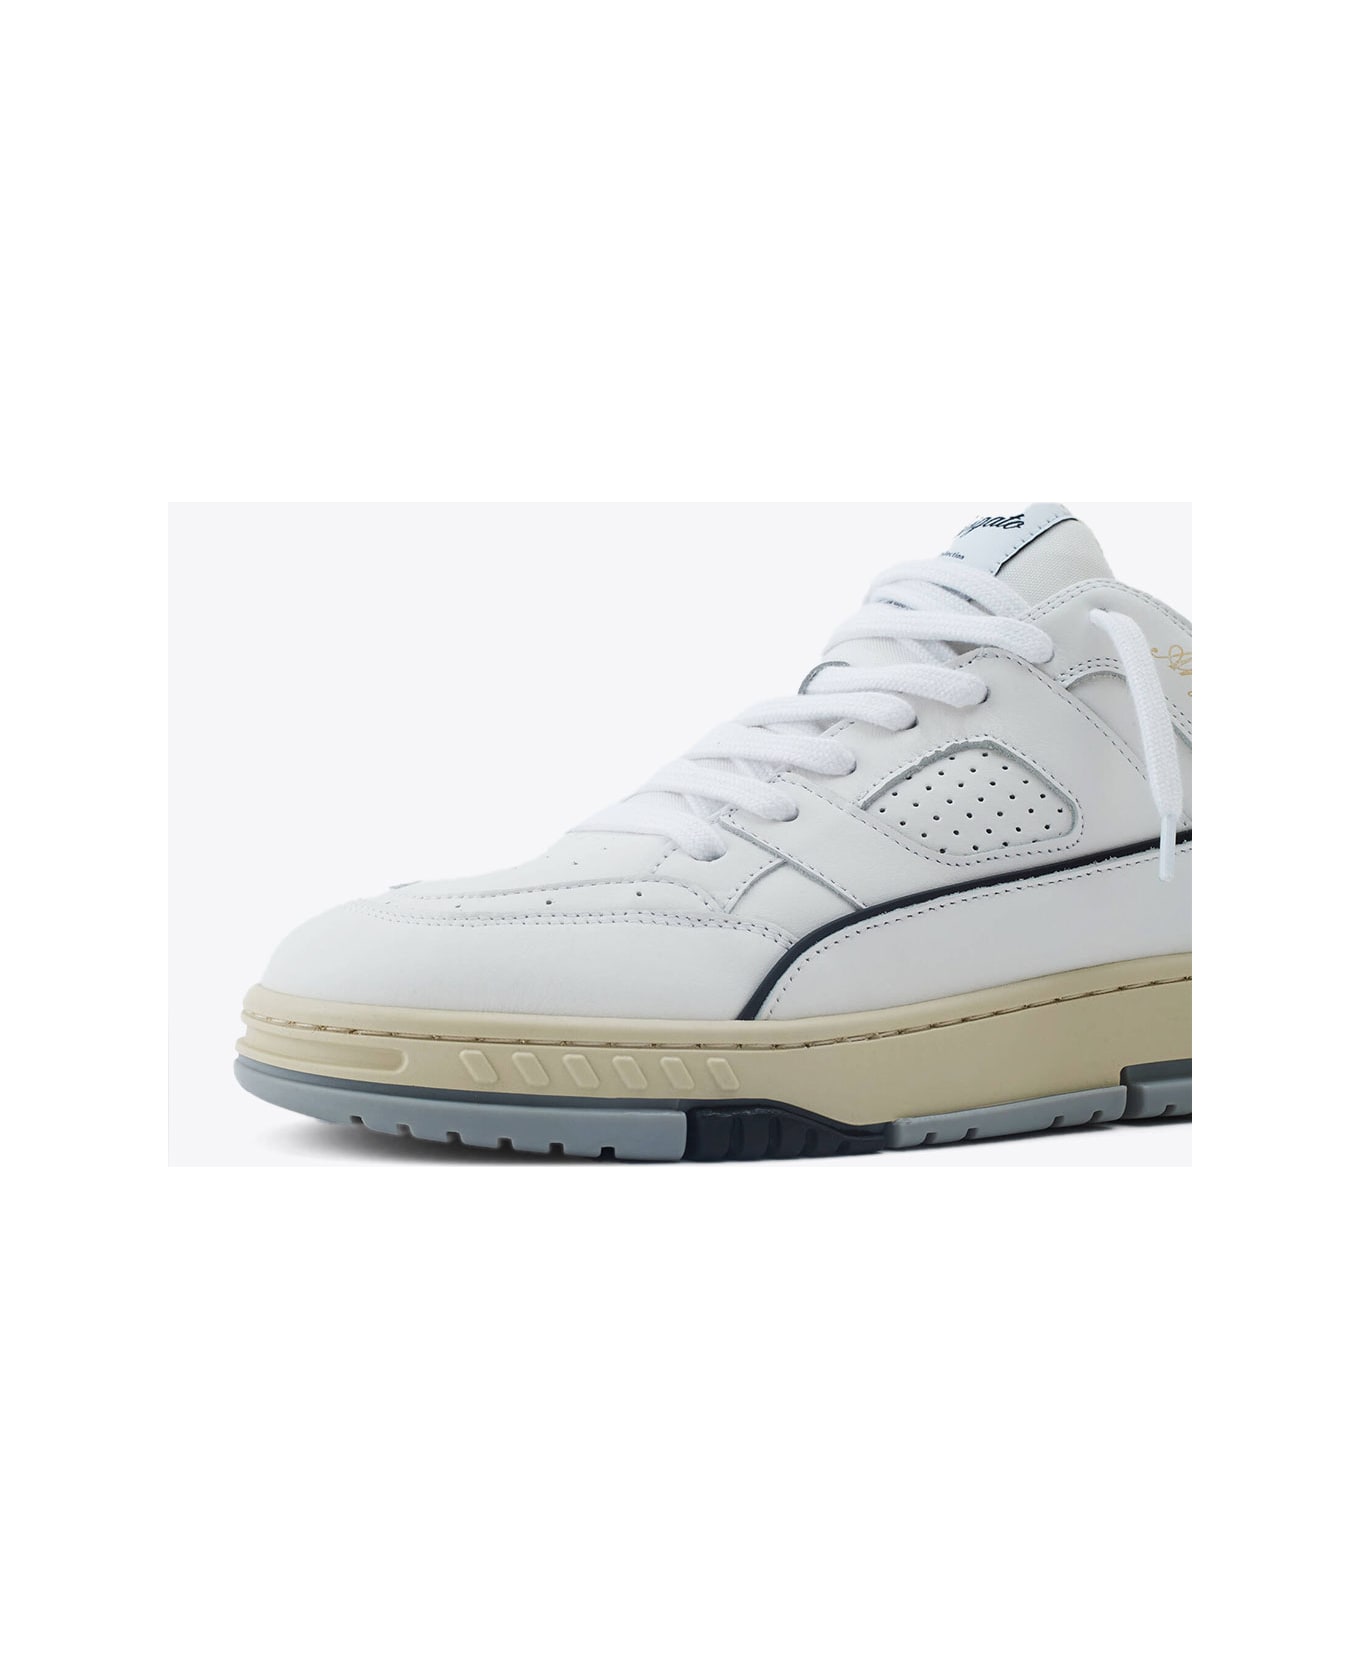 Axel Arigato Area Lo Sneaker White leather lace-up low sneaker - Area Lo sneaker - Bianco/nero